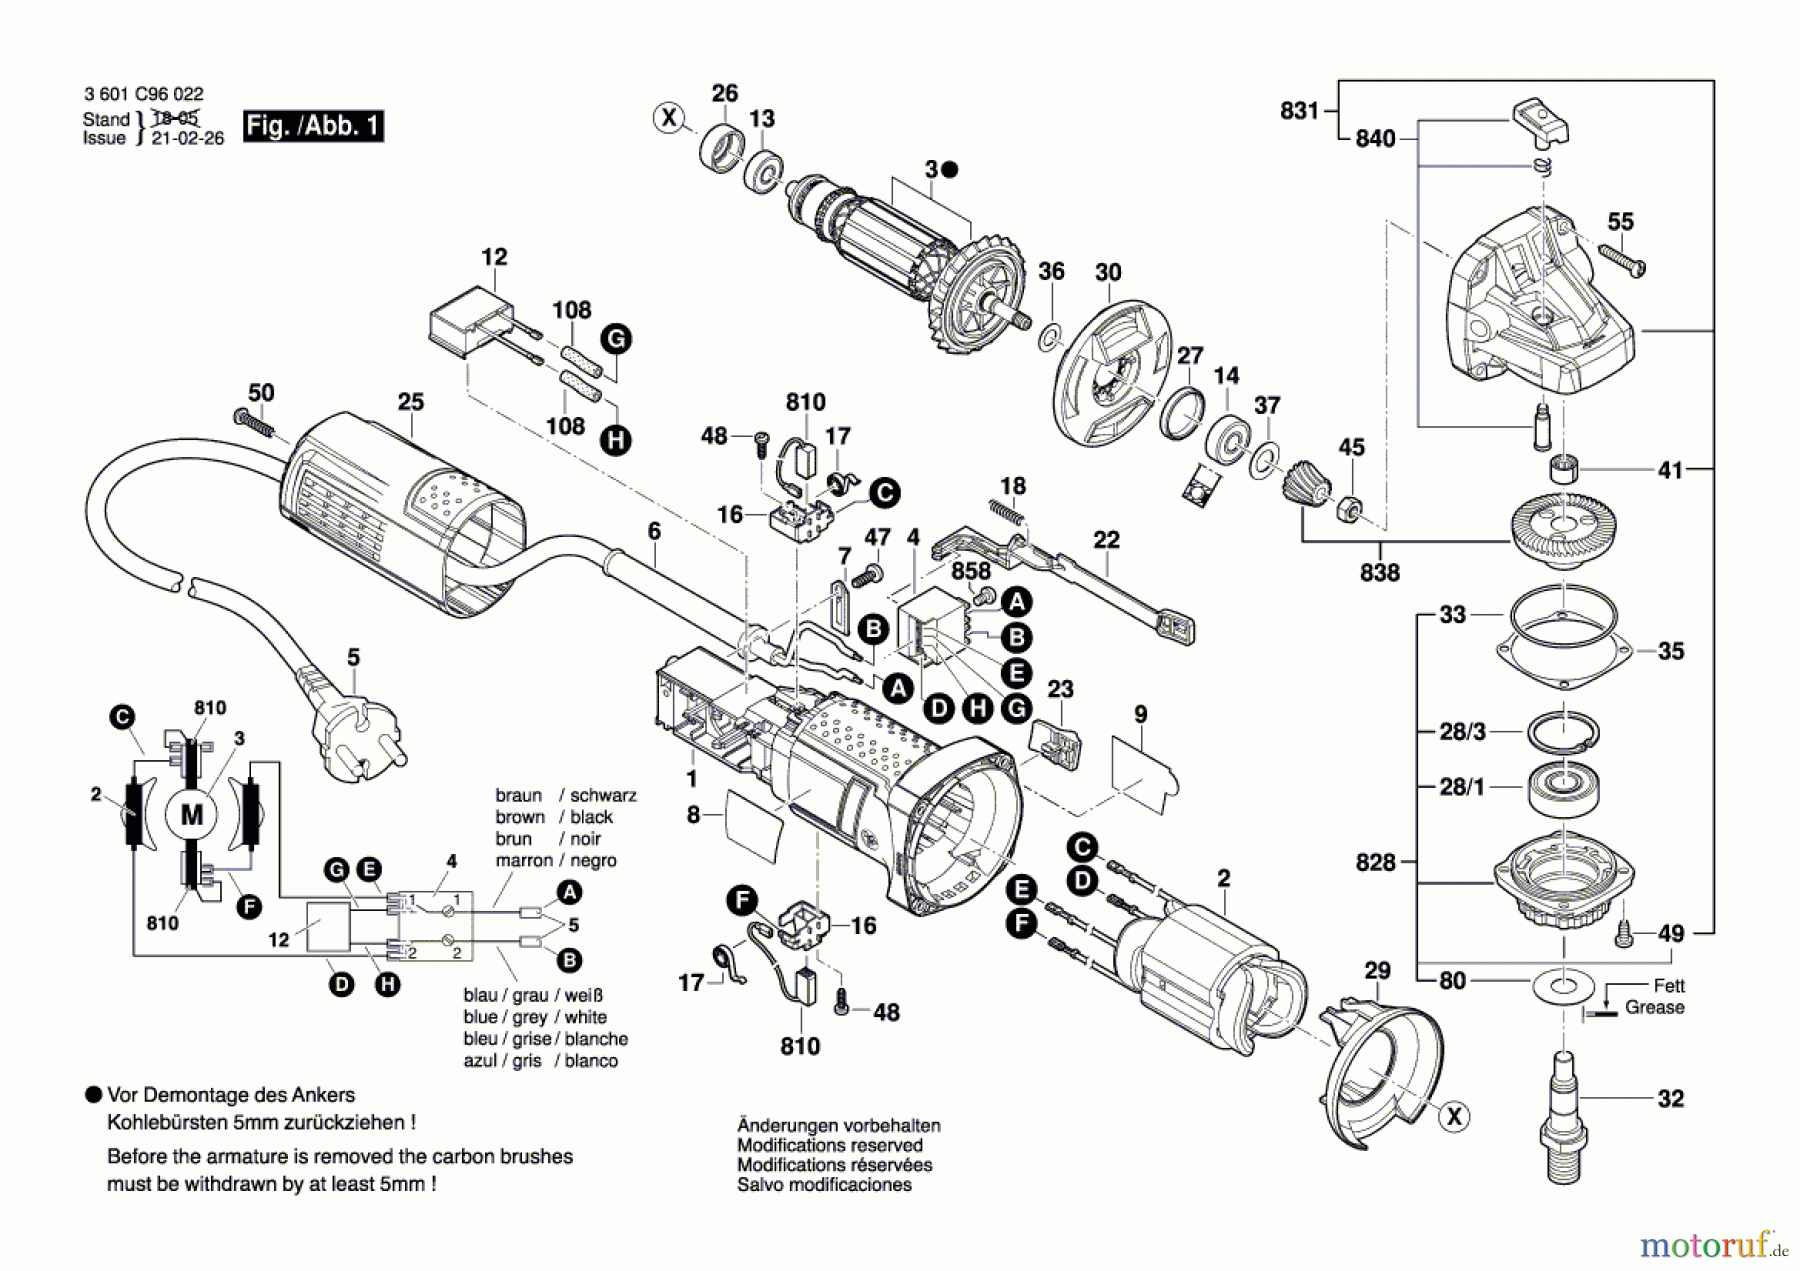  Bosch Werkzeug Winkelschleifer GWS 9-125 Seite 1